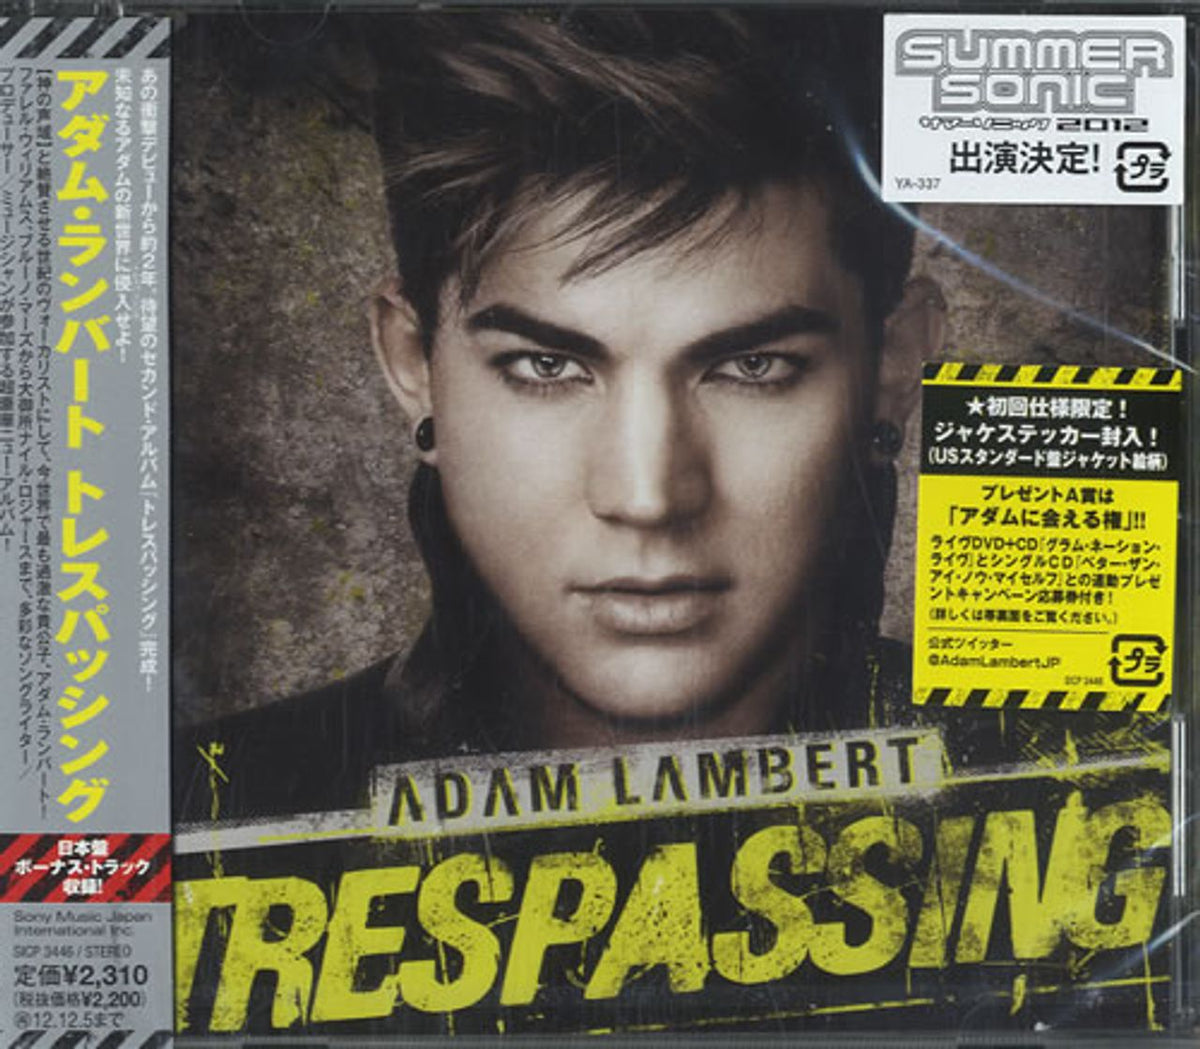 Adam Lambert Trespassing - Sealed Japanese Promo CD album — RareVinyl.com